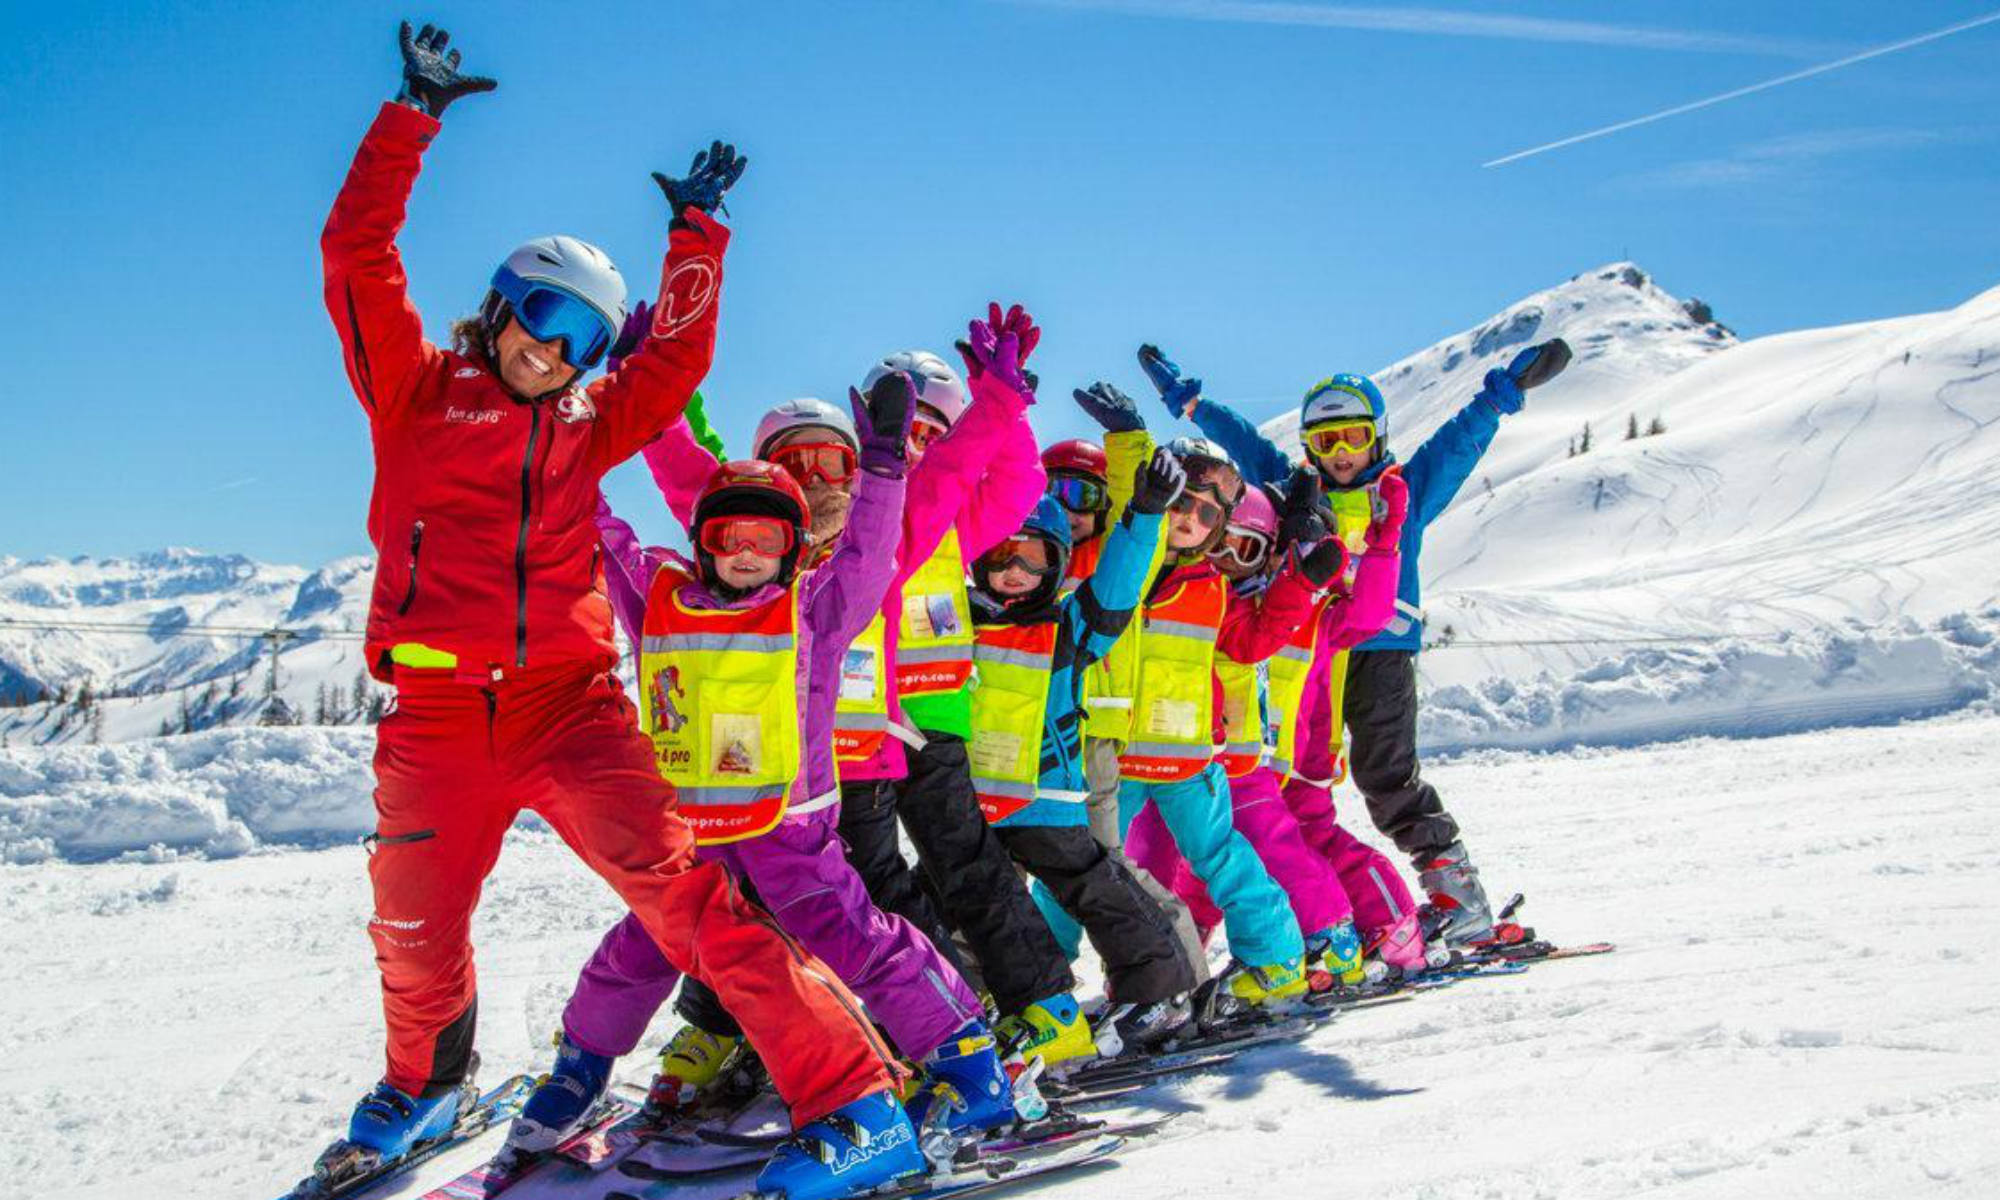 Wintersport met kinderen; tips van skikleding tot bestemmingen - Reisliefde